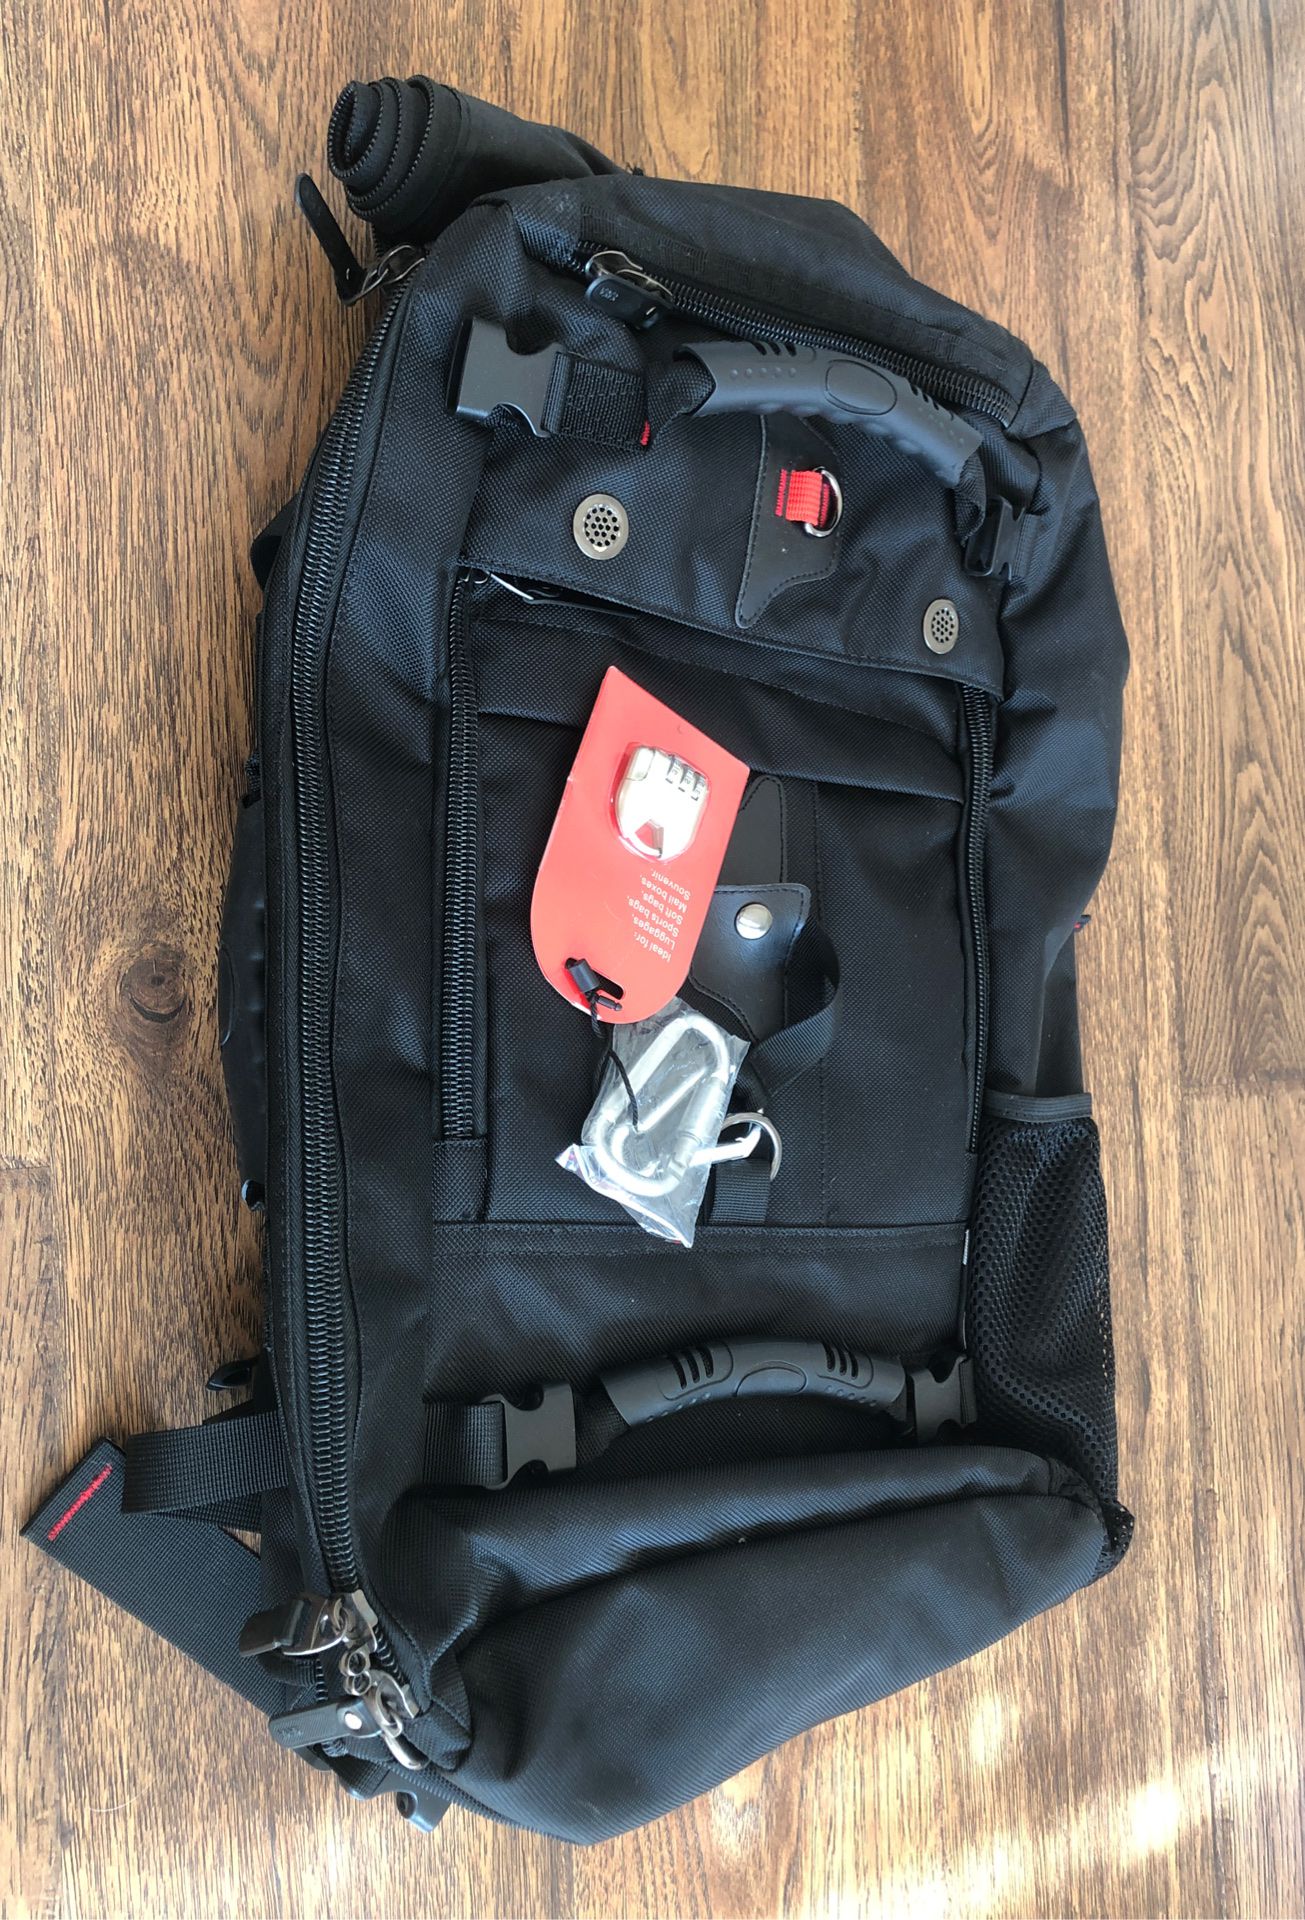 KAKA Travel Backpack / Duffle Brand New